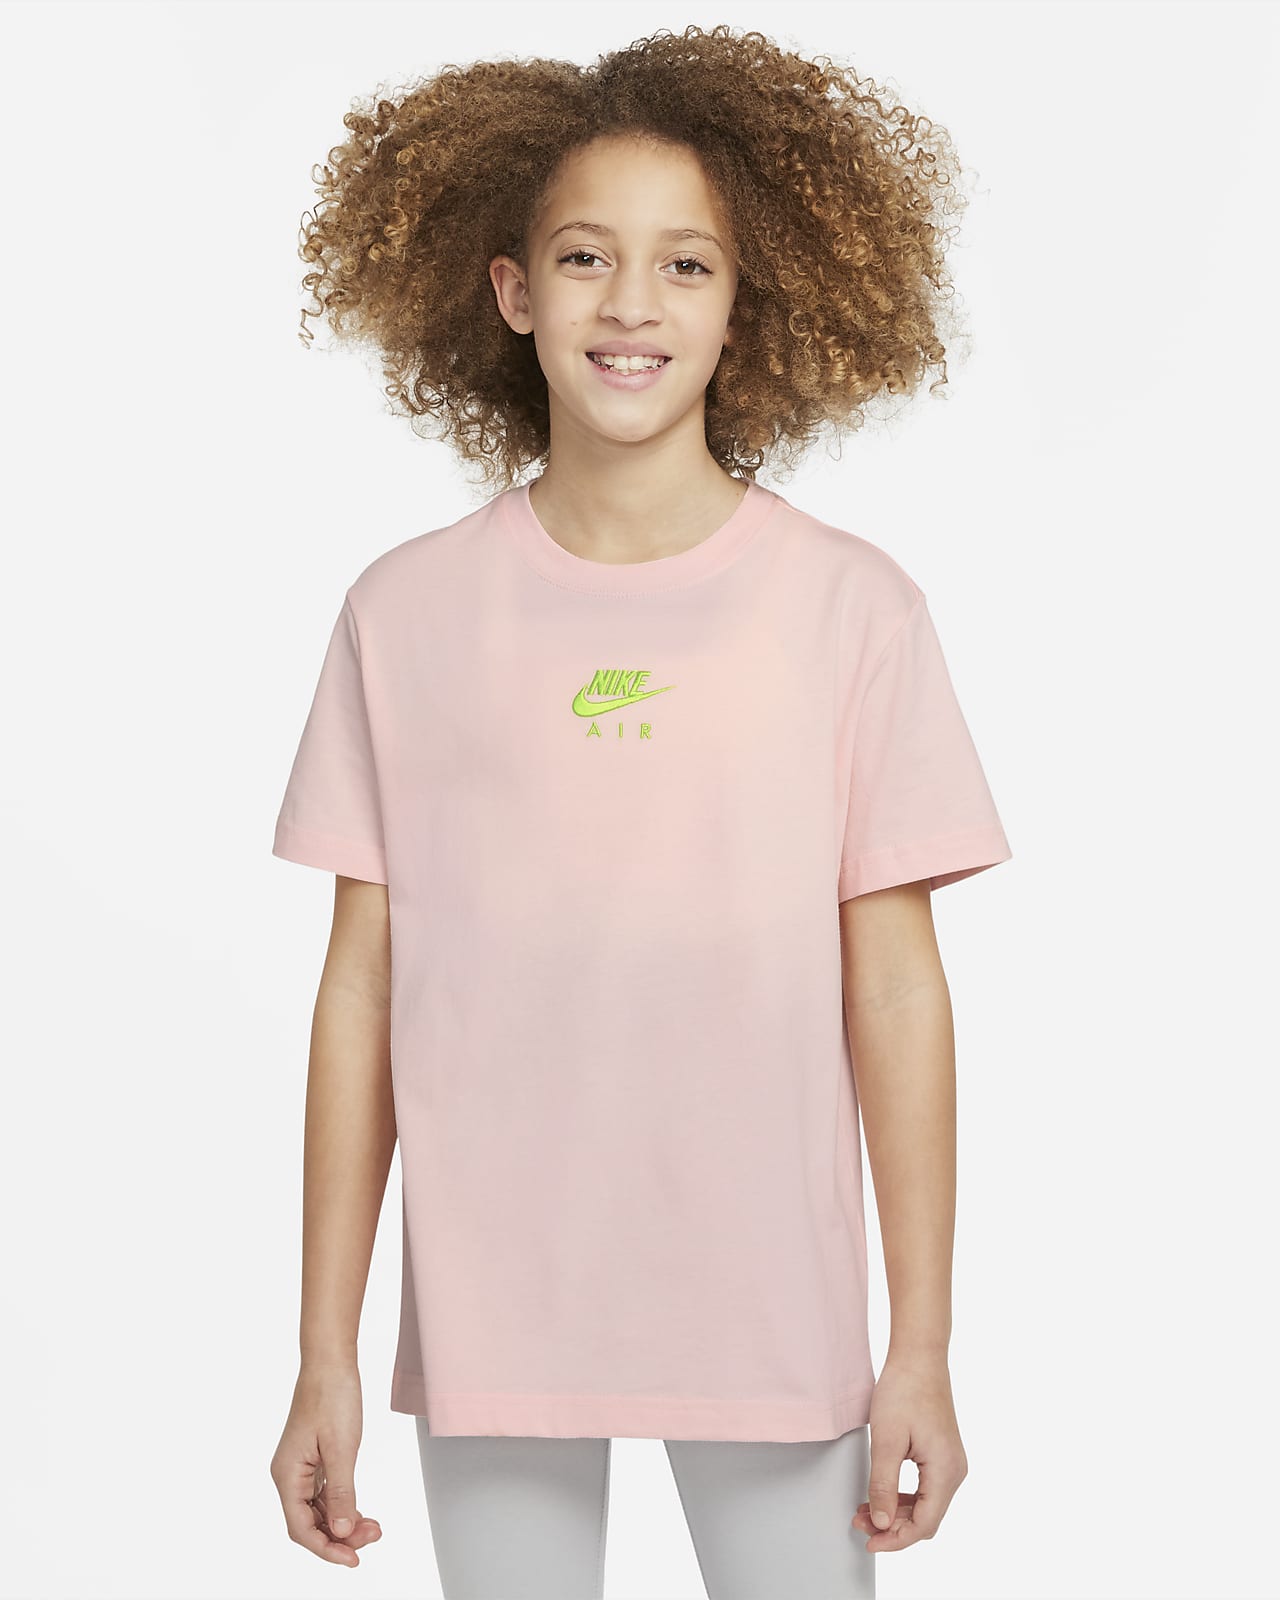 Tričko Nike Air pro větší děti (dívky)